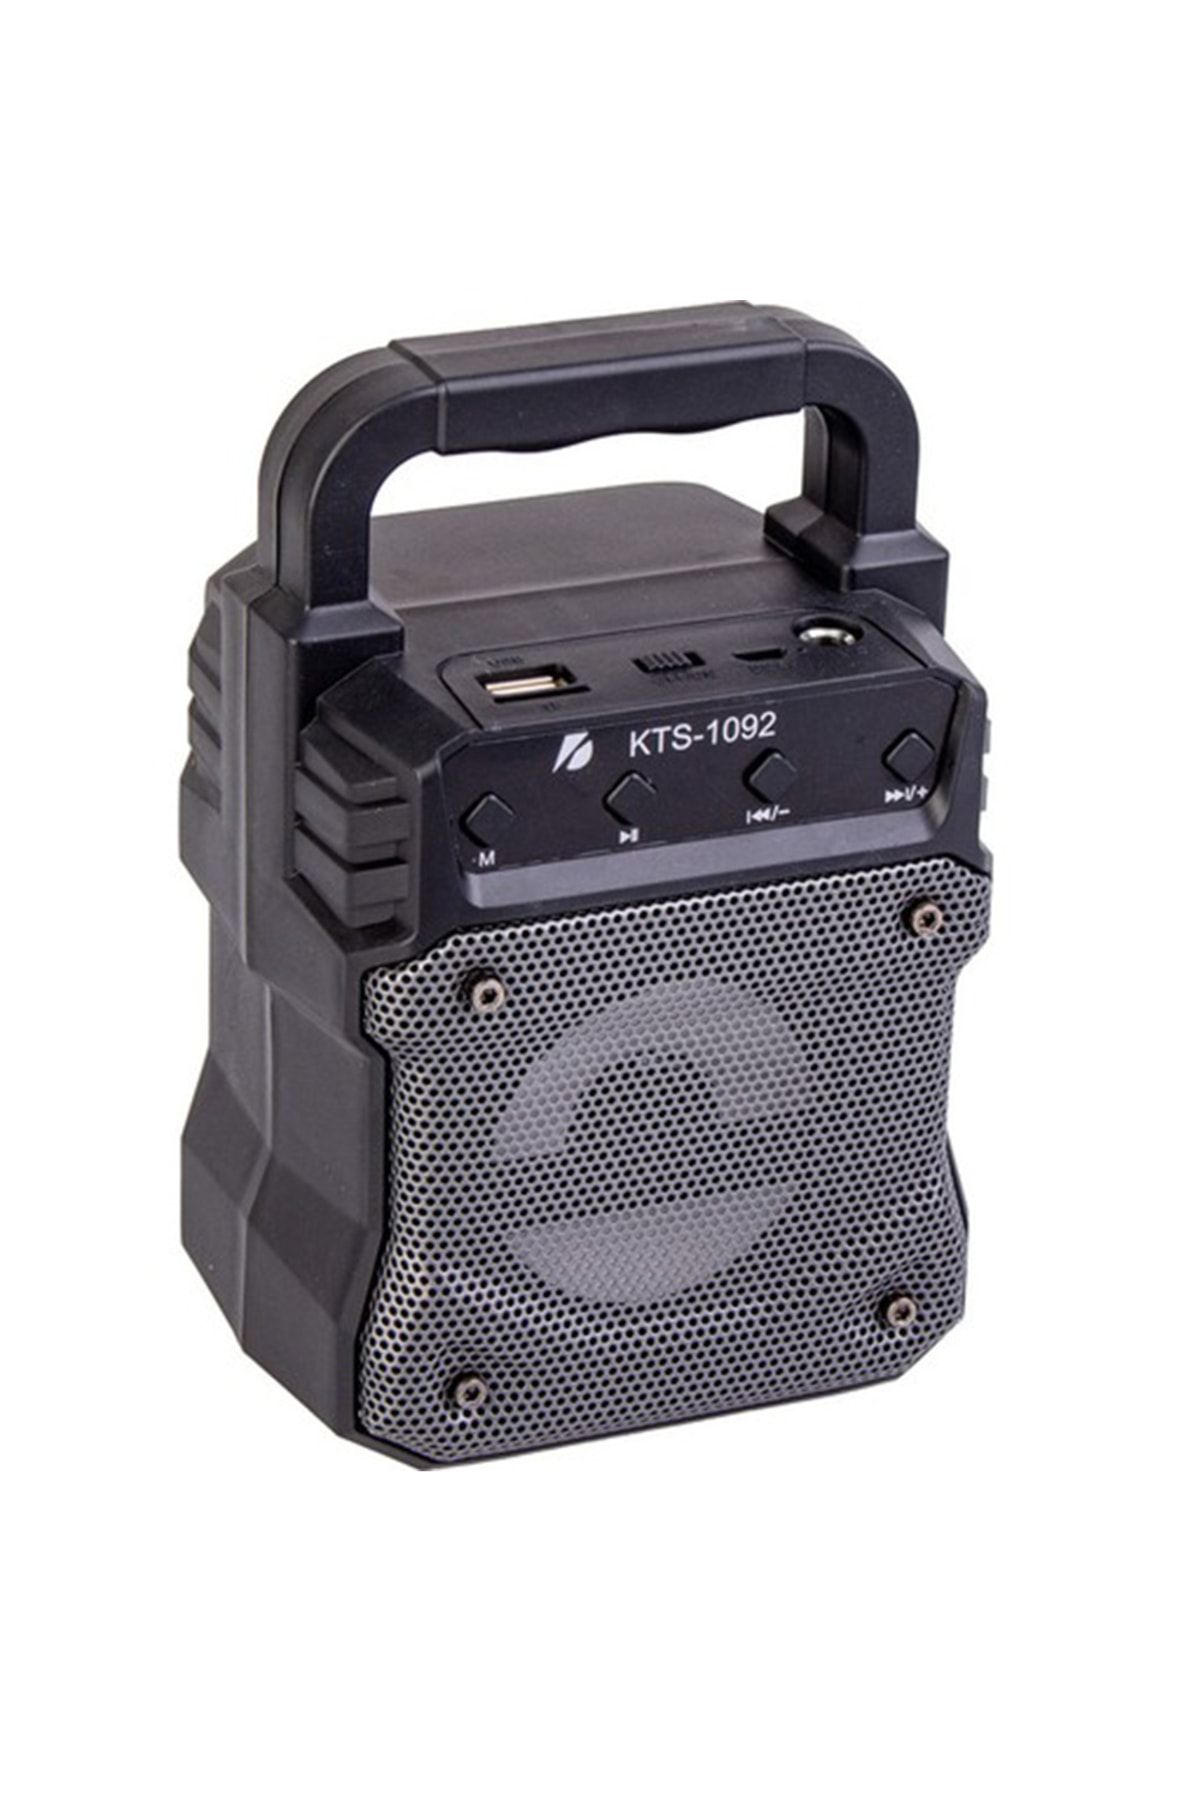 Subzero Kablosuz Taşınabilir Ses Bombası Bluetooth Hoparlör Kts-1092